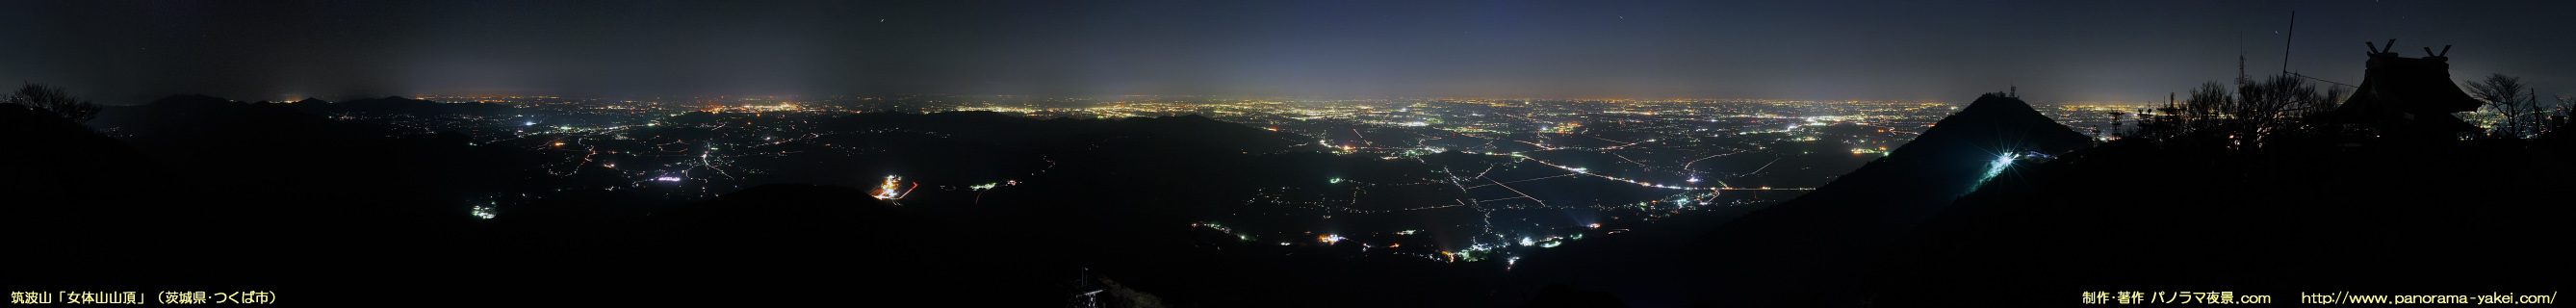 筑波山 女体山山頂からの360度パノラマ夜景写真